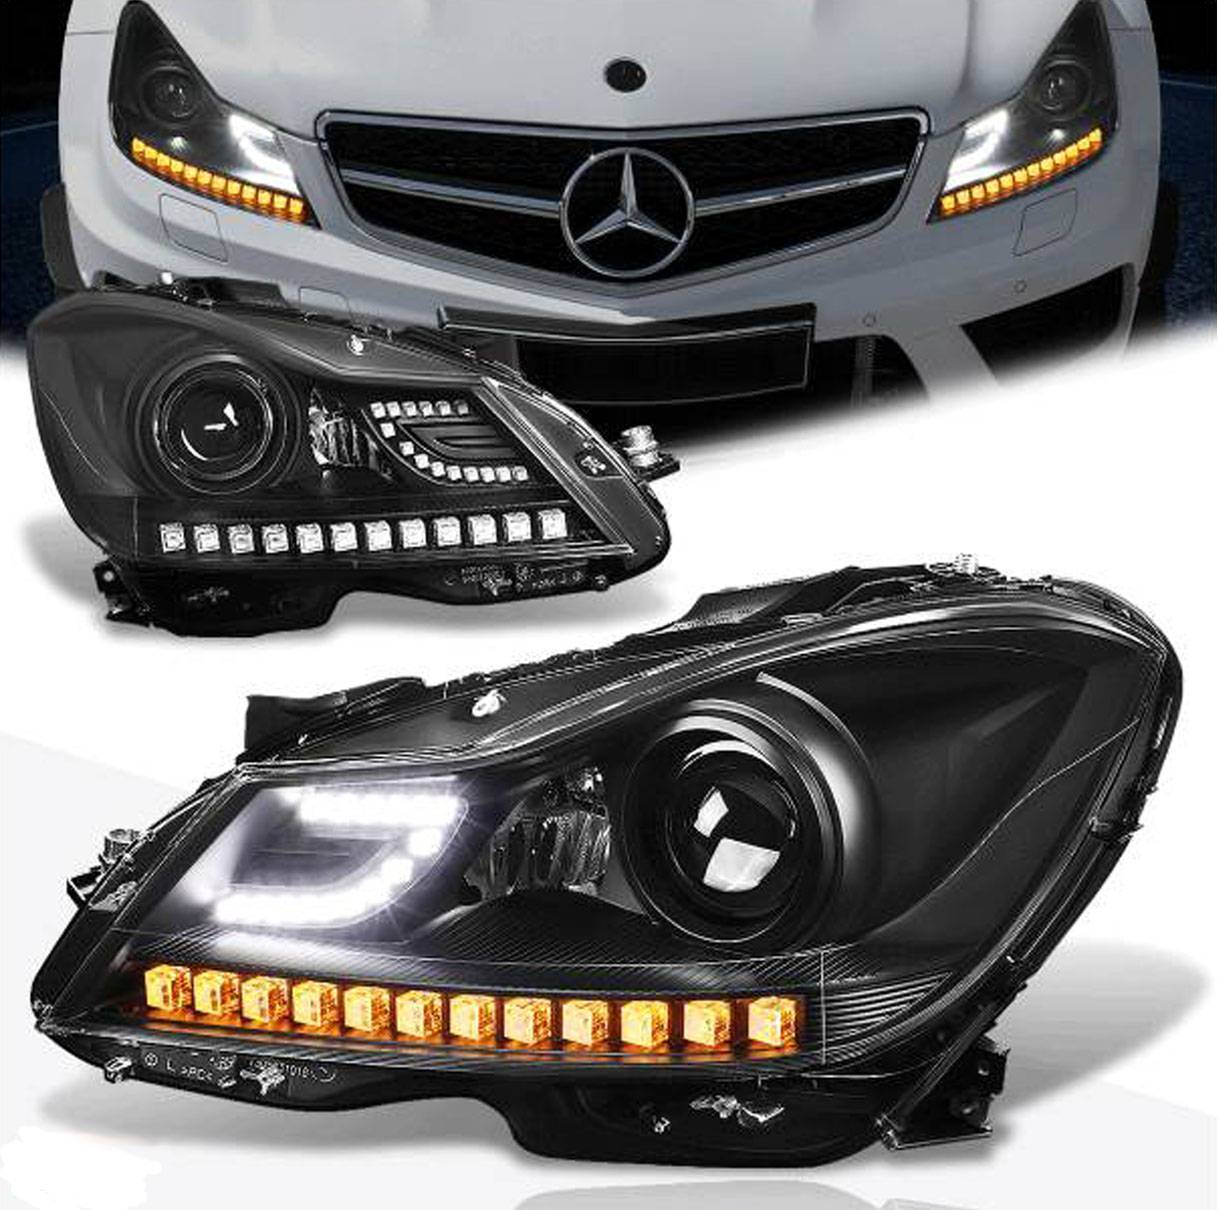 Farol Led 3D Negro Mercedes Classe C180 C200 2011 a 2015 Par